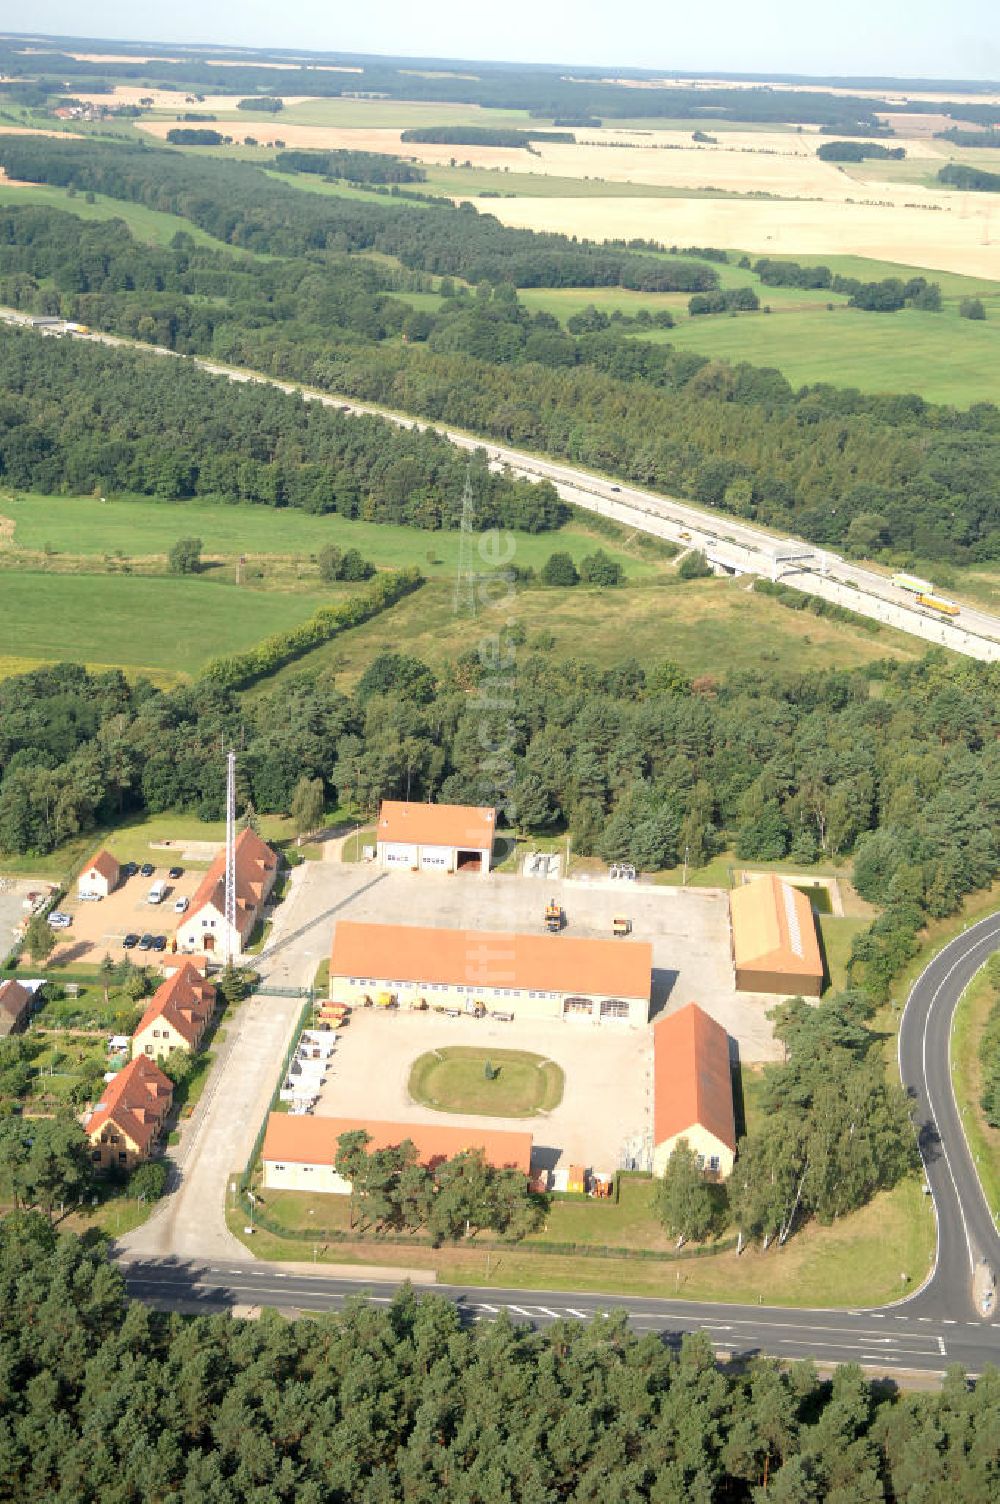 Niemegk von oben - Autobahnmeisterei Niemegk in Brandenburg